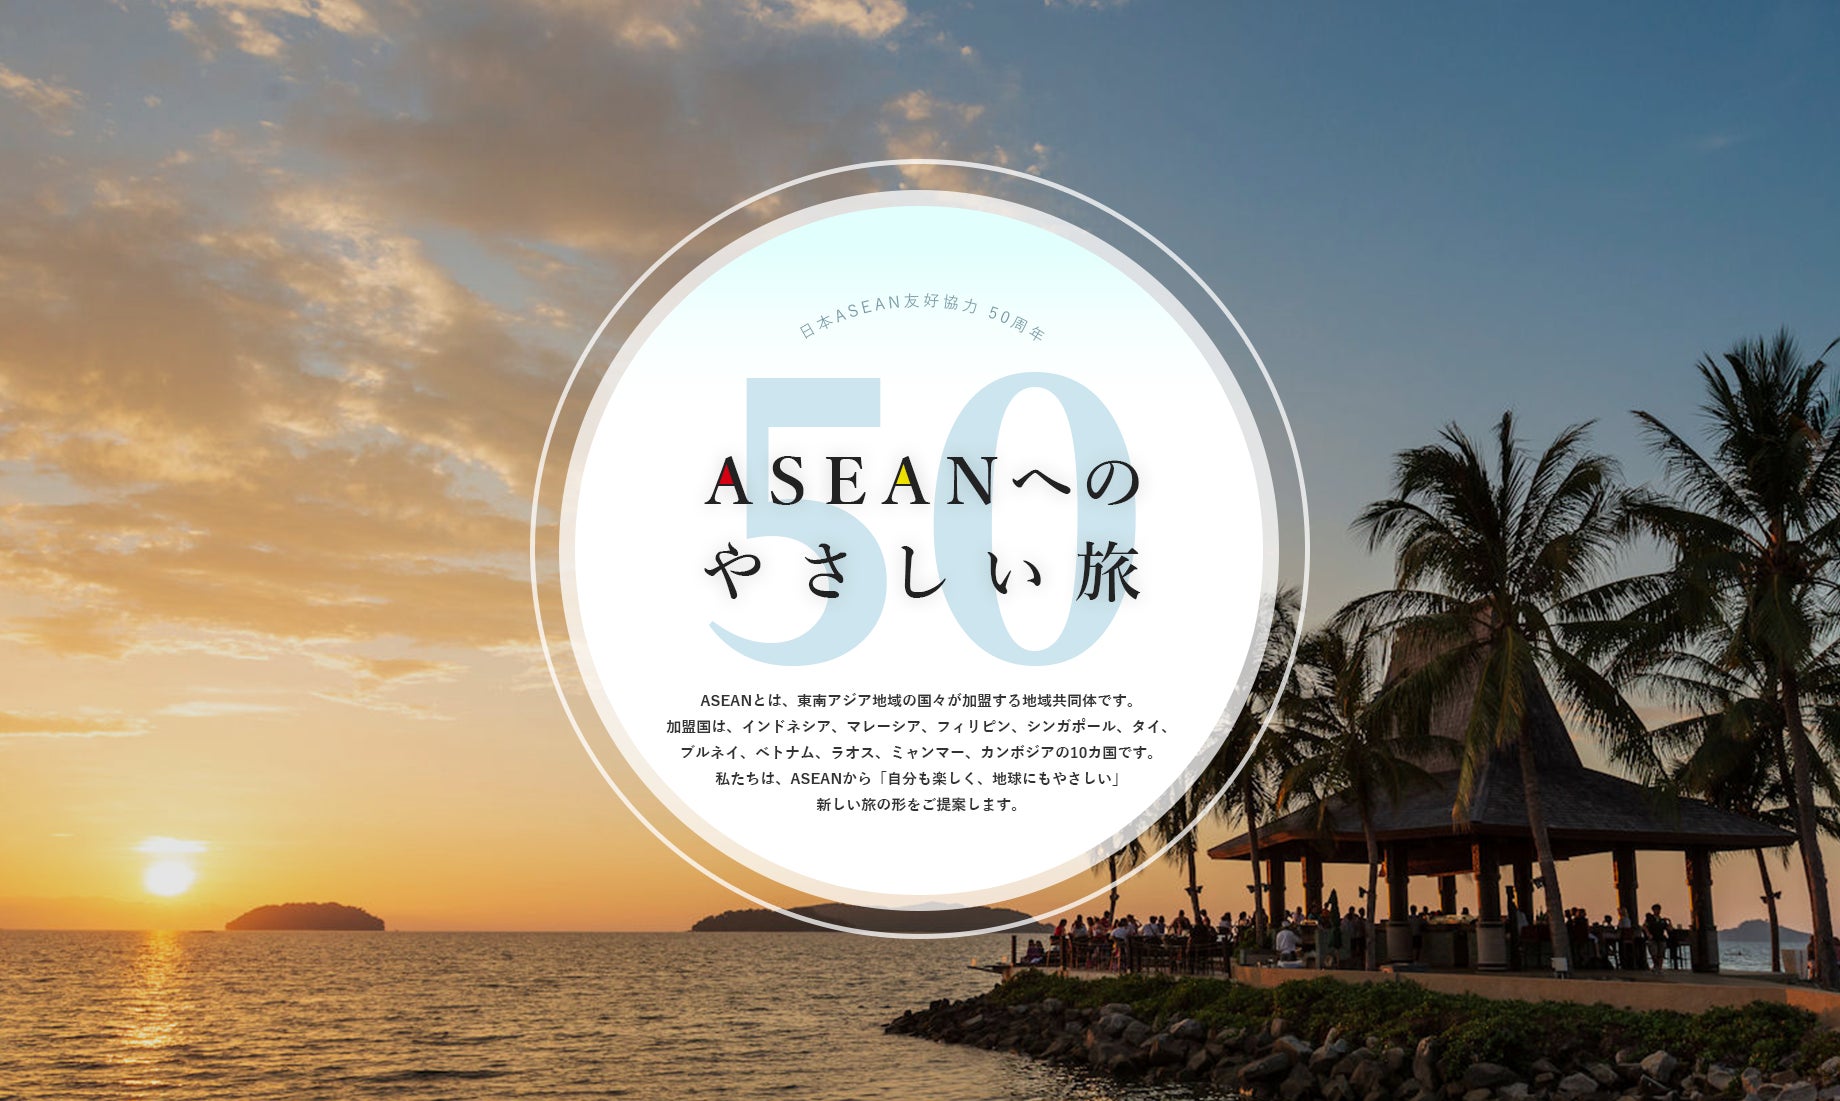 ウェブコンテンツ「ASEANへのやさしい旅 50」を公開: 東南アジア10か国への旅を「サステナブル」な視点で楽しむ50のおすすめアイデアのサブ画像1_Webコンテンツ「ASEANへのやさしい旅 50」